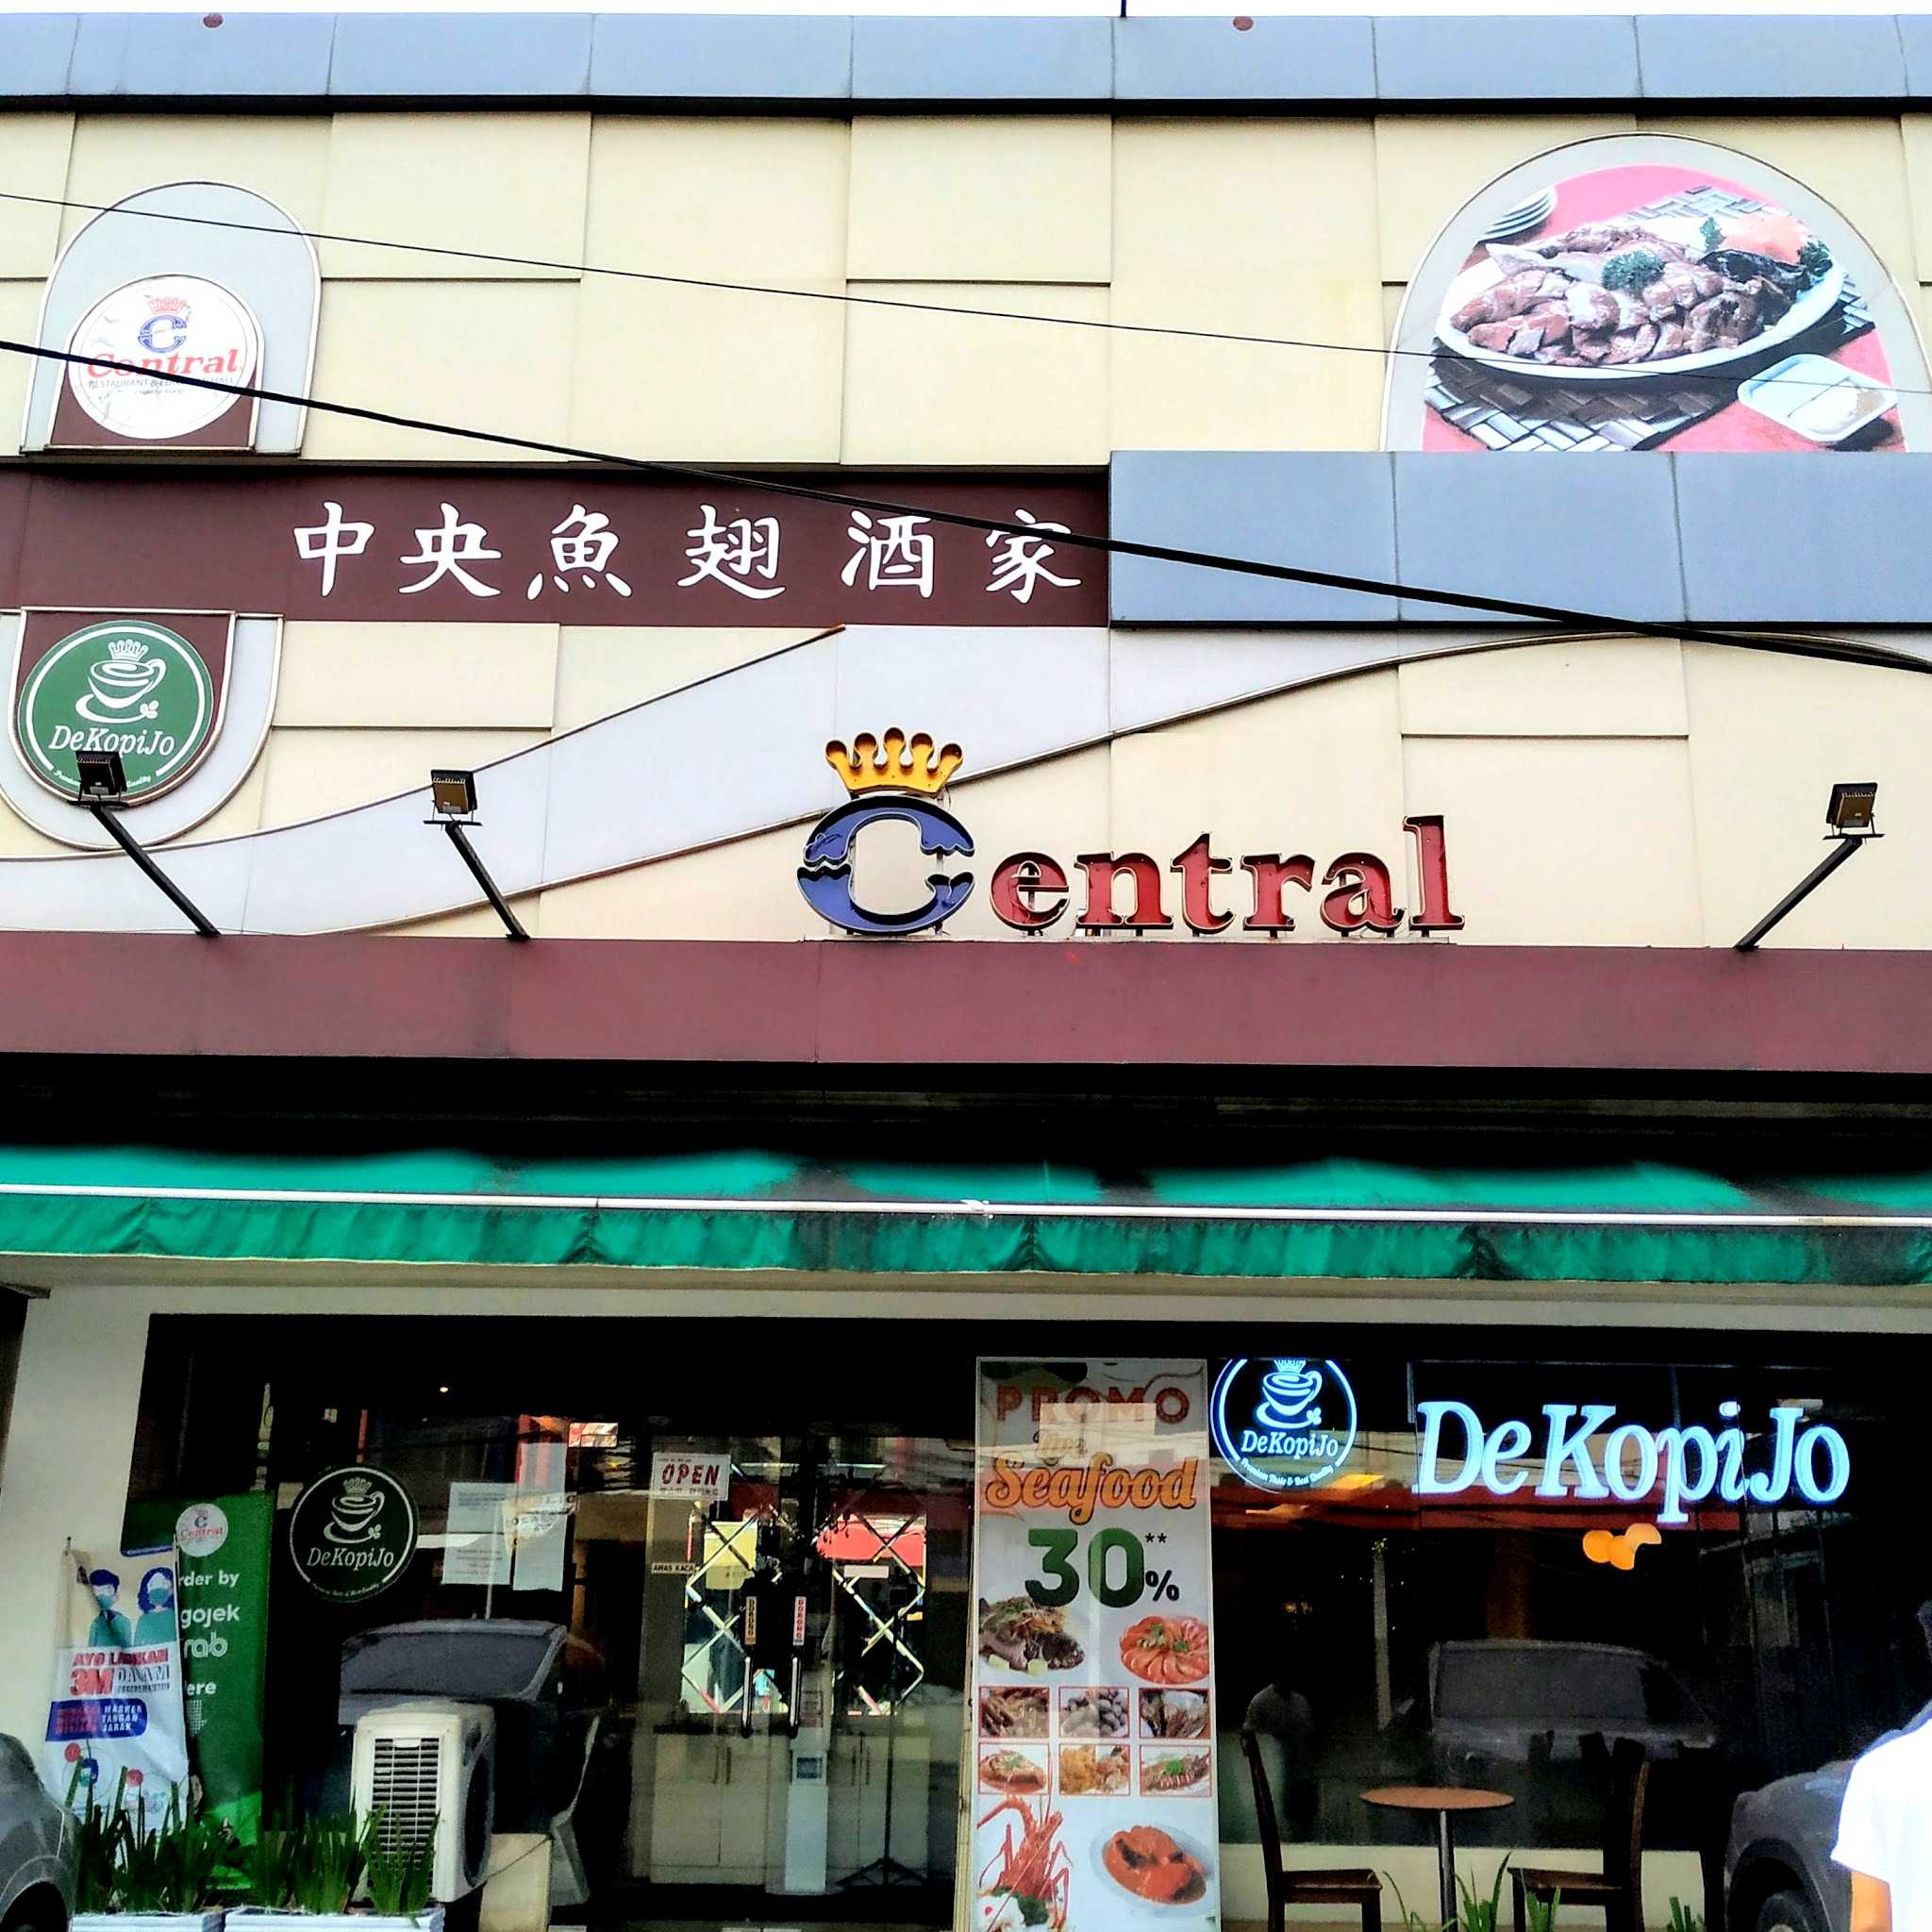 Central Restaurant Taman Ratu 1